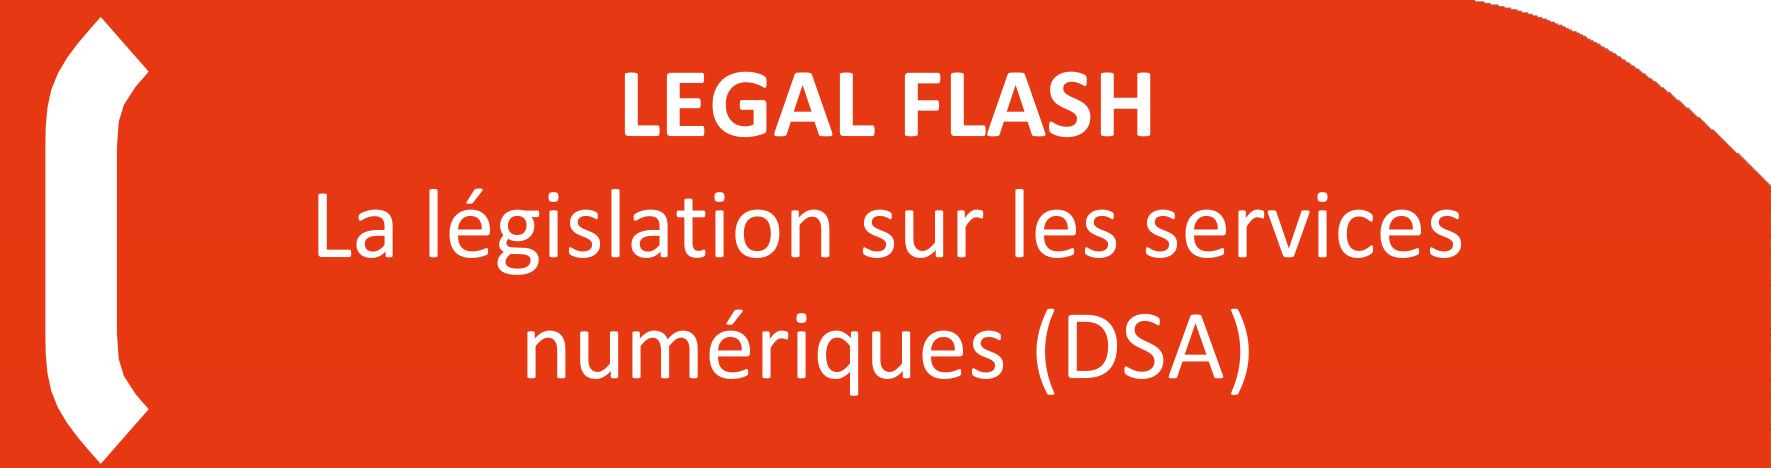 LEGAL FLASH La législation sur les services numériques (DSA)